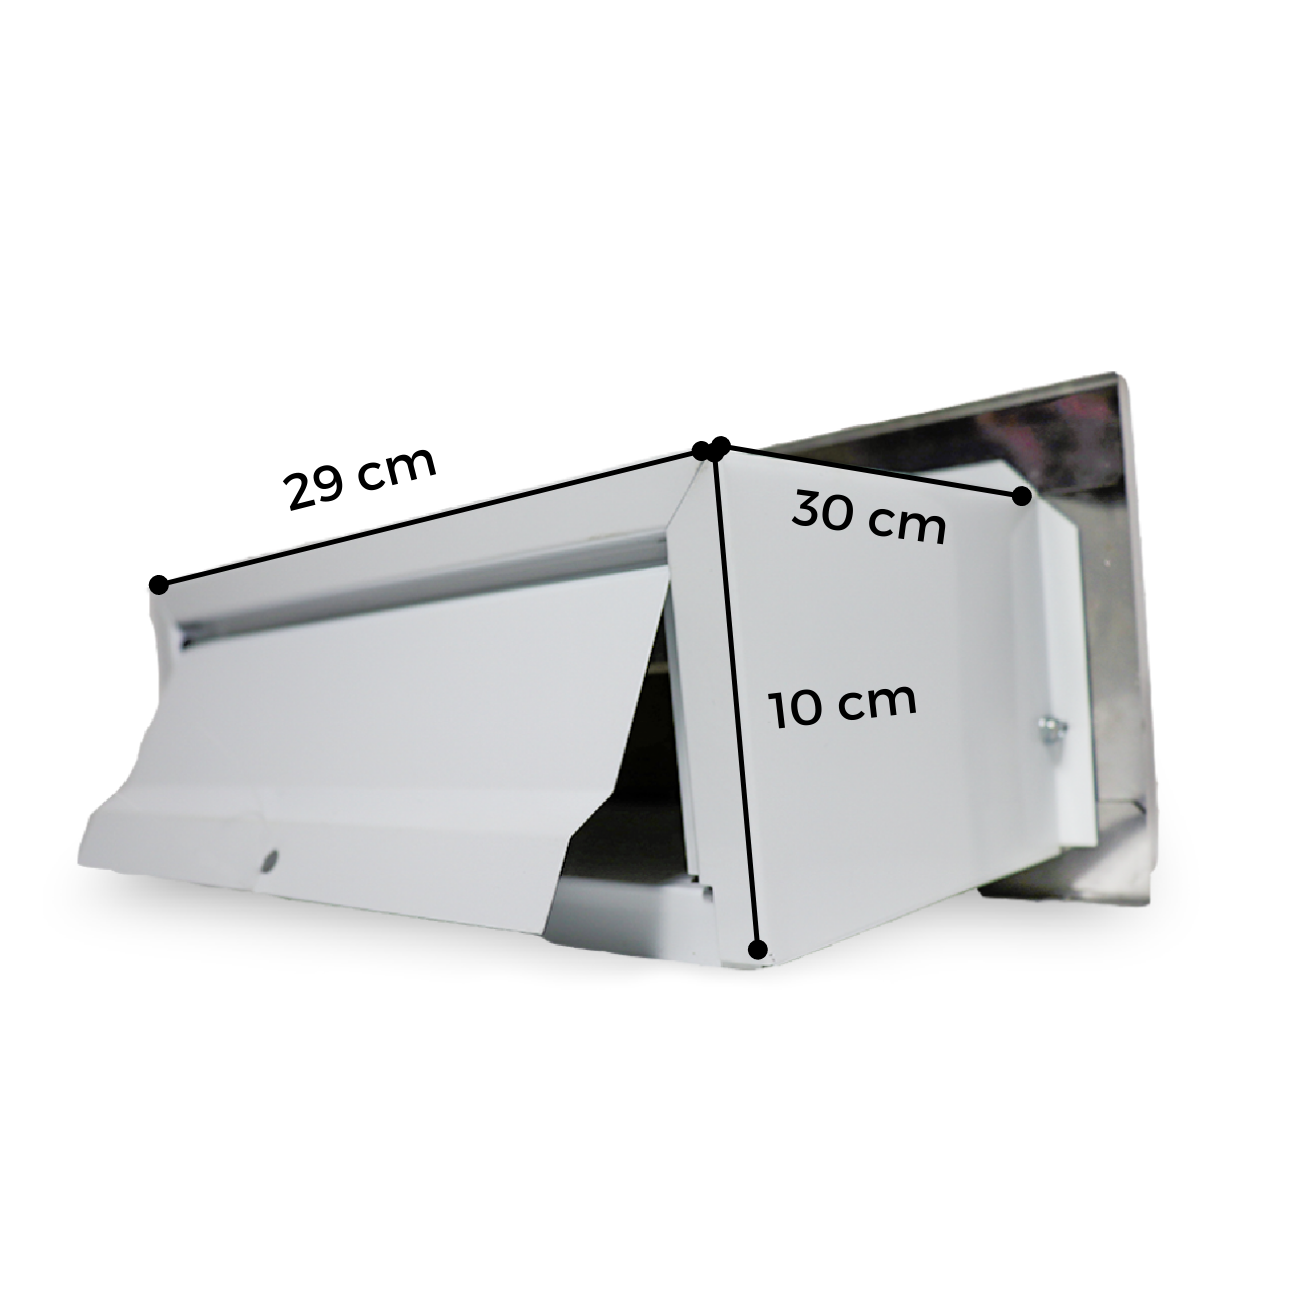 Caixa De Correio Moderna Inox De Embutir - 30 CM - 3